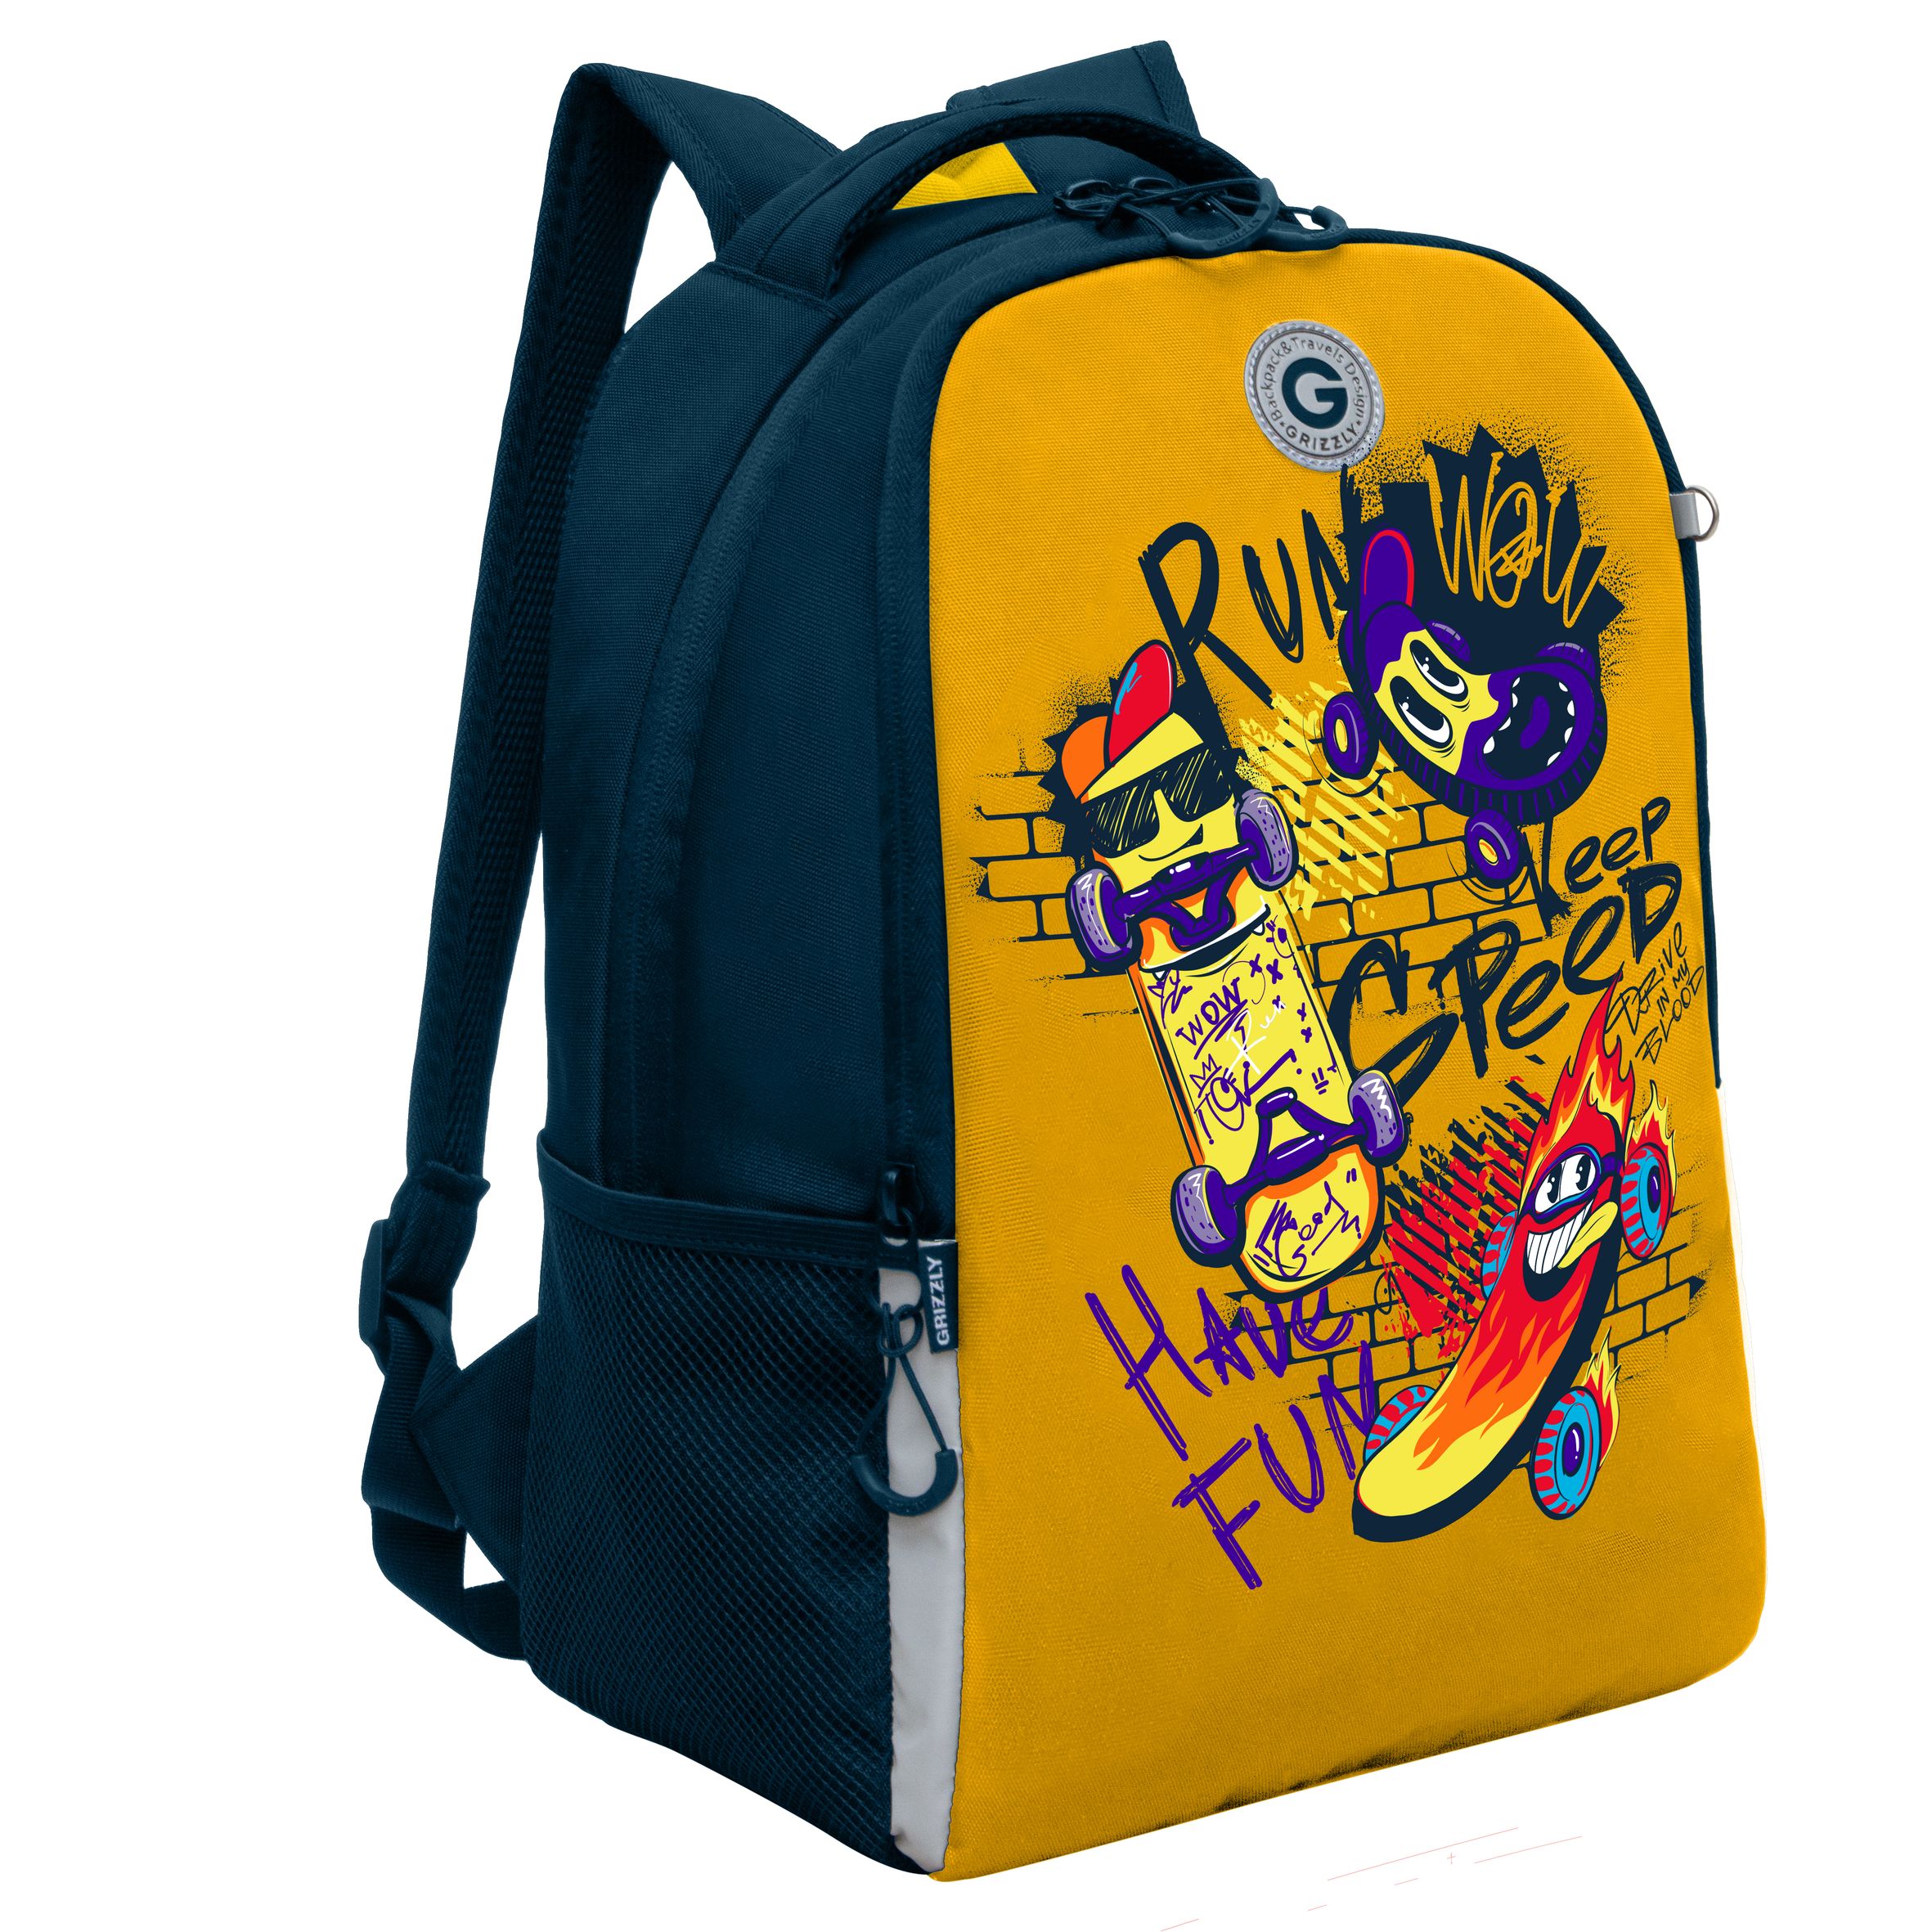 Рюкзак школьный GRIZZLY легкий с жесткой спинкой, 2 отделения, для мальчика RB-451-7/2 рюкзак школьный grizzly легкий с жесткой спинкой 2 отделения rb 451 3 1